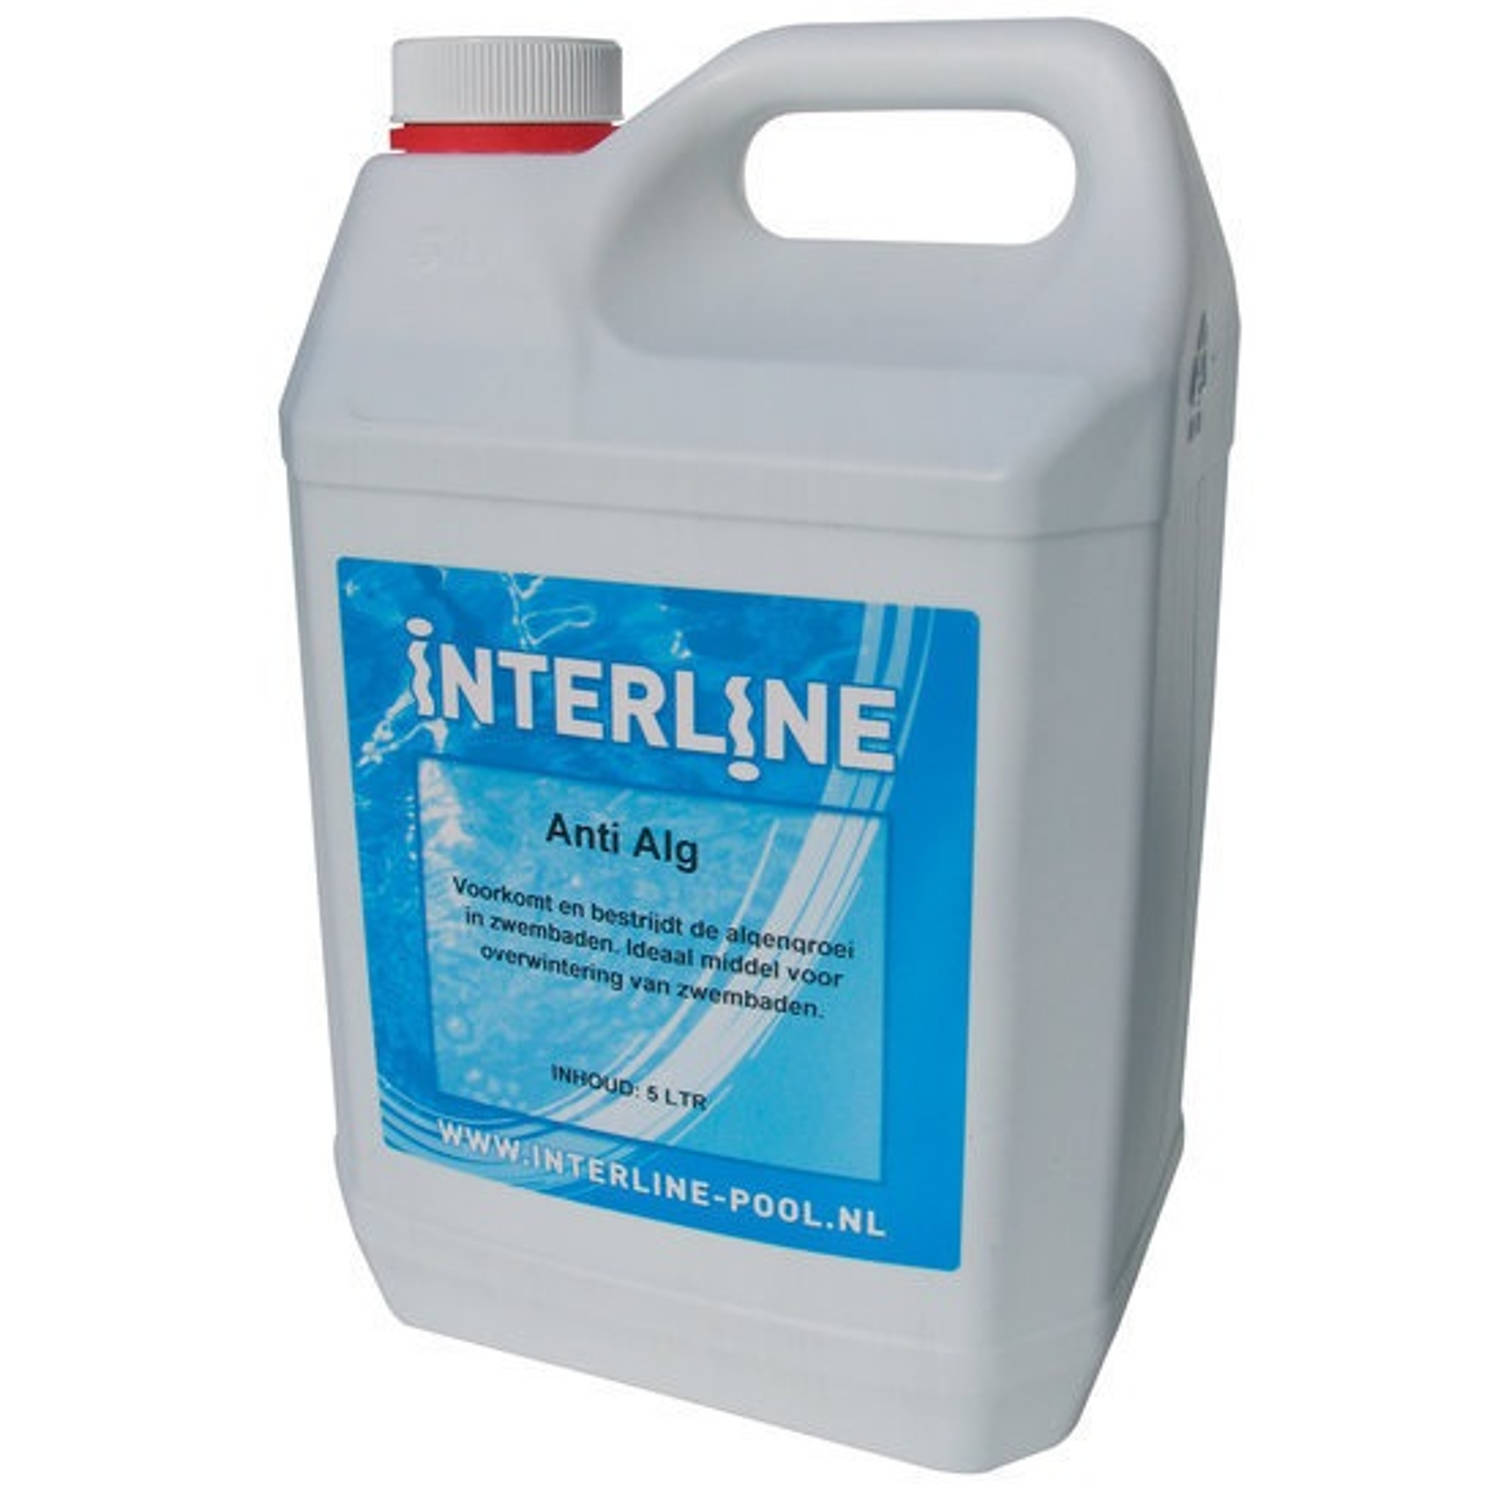 Interline Anti Alg 5 liter (52781300)